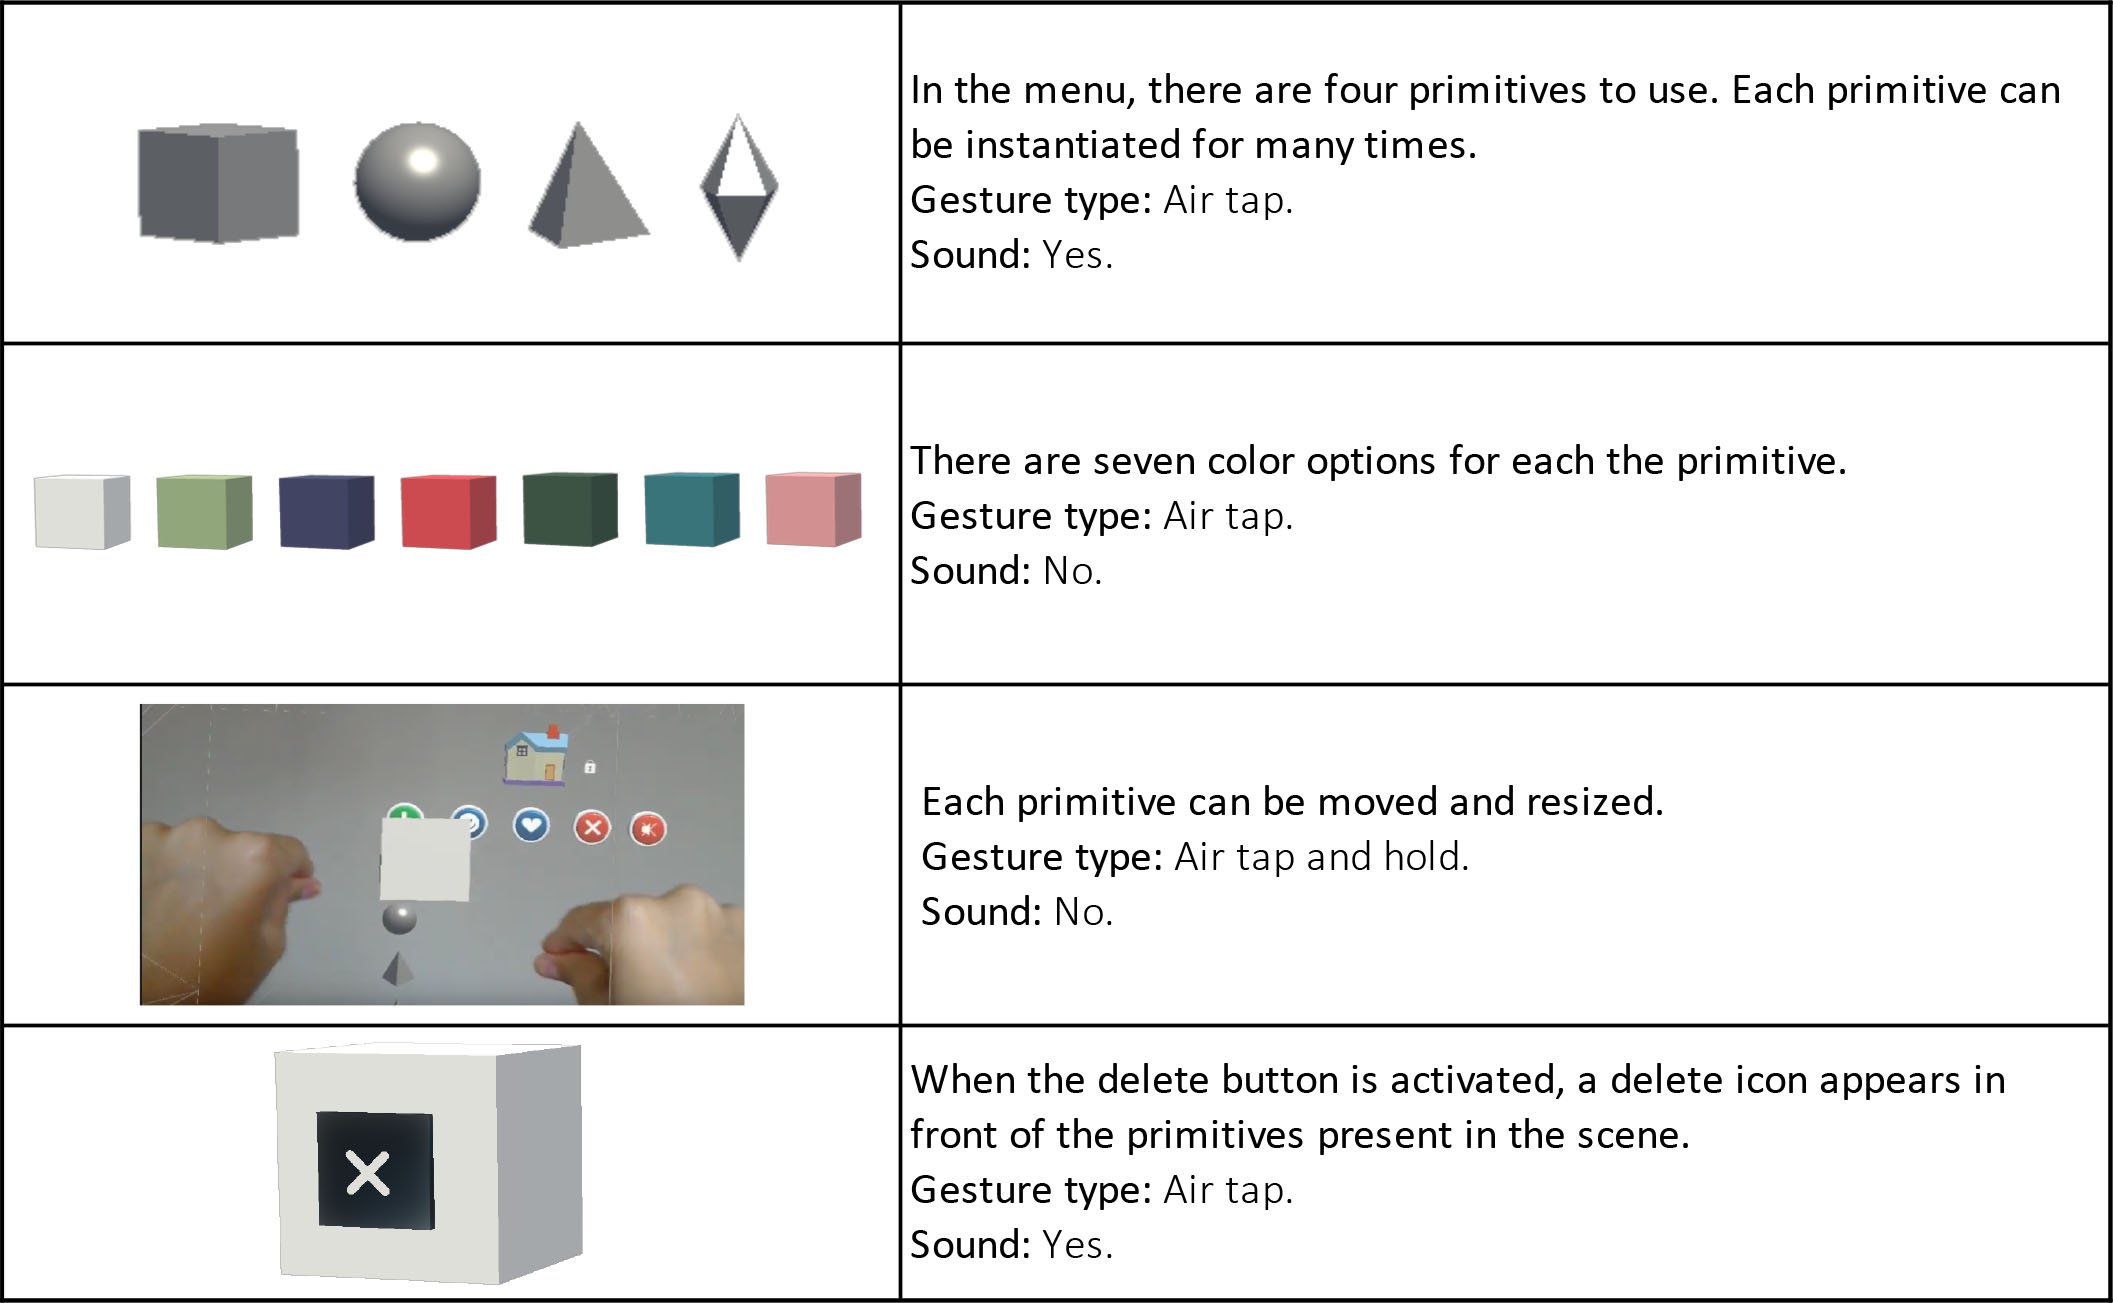 Table 3: Build-menu button actions.